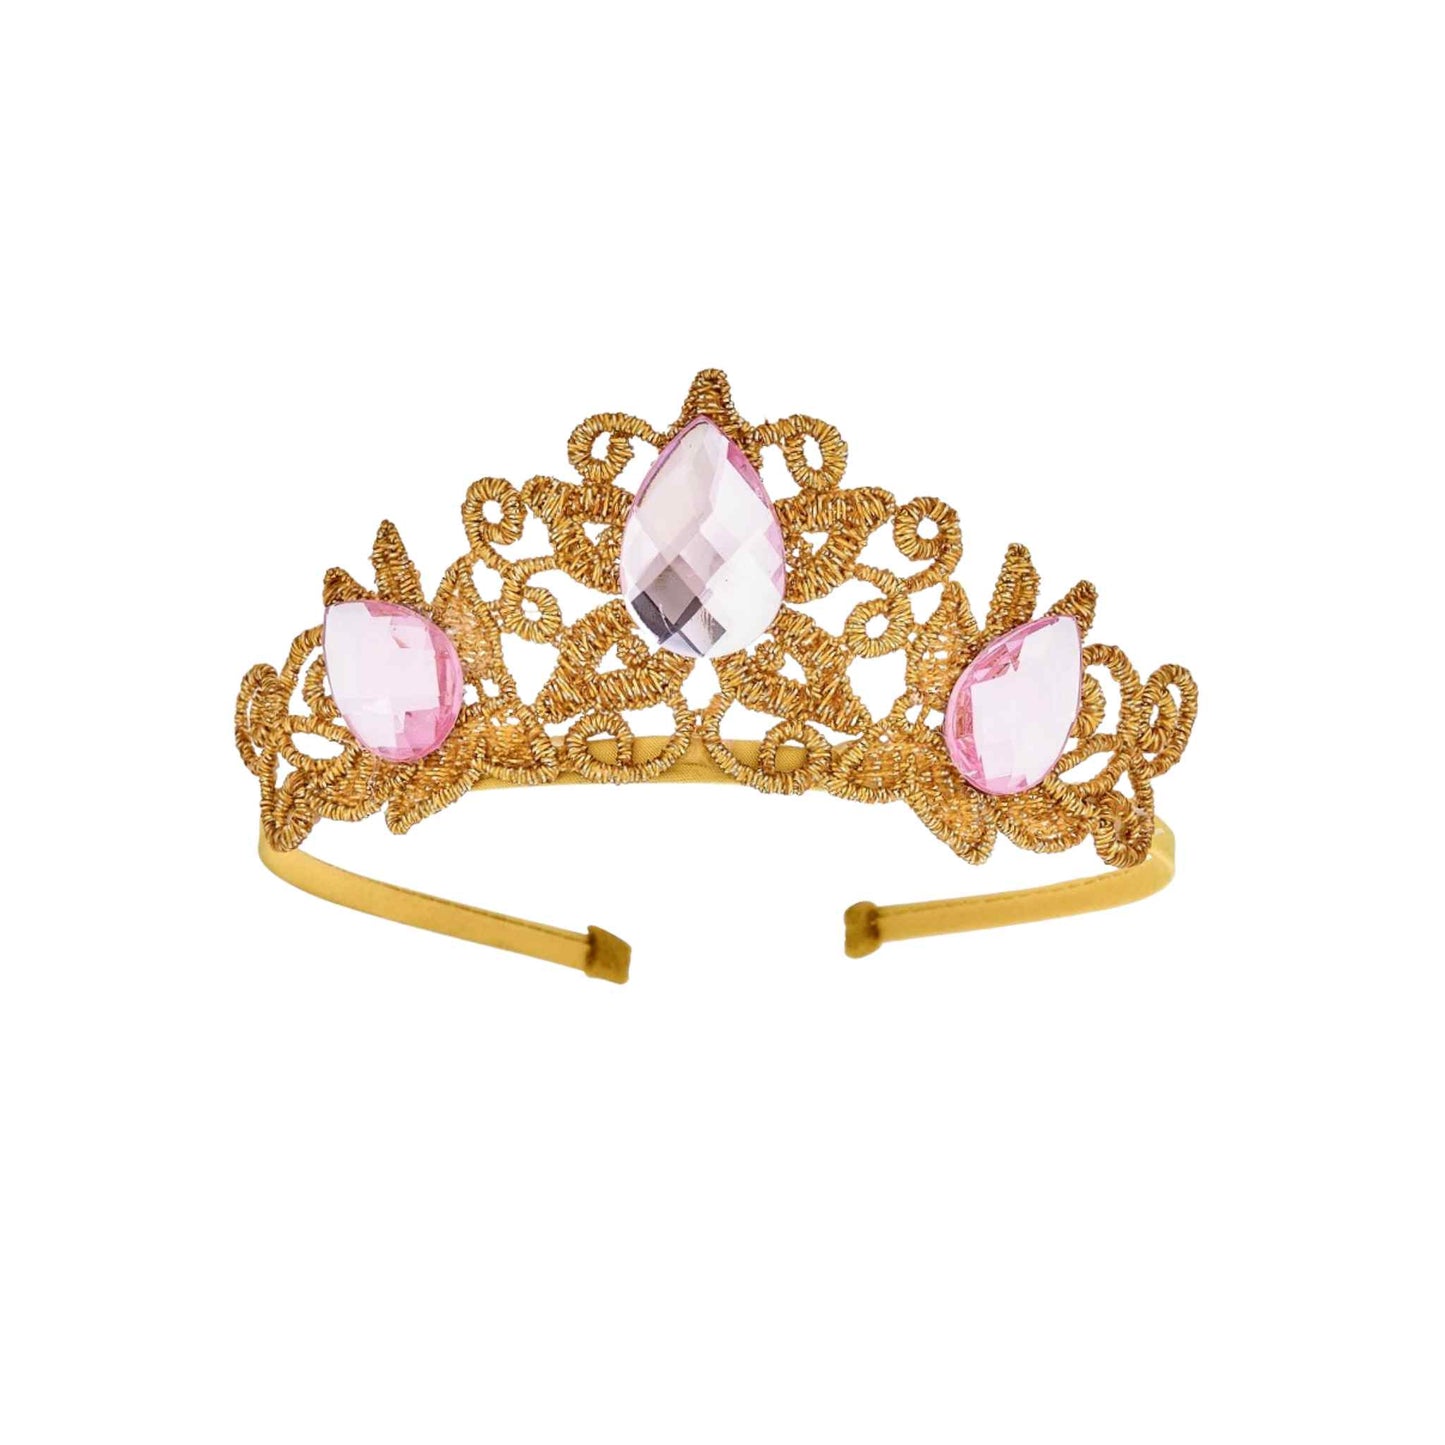 Raven Princess Crown - Pink